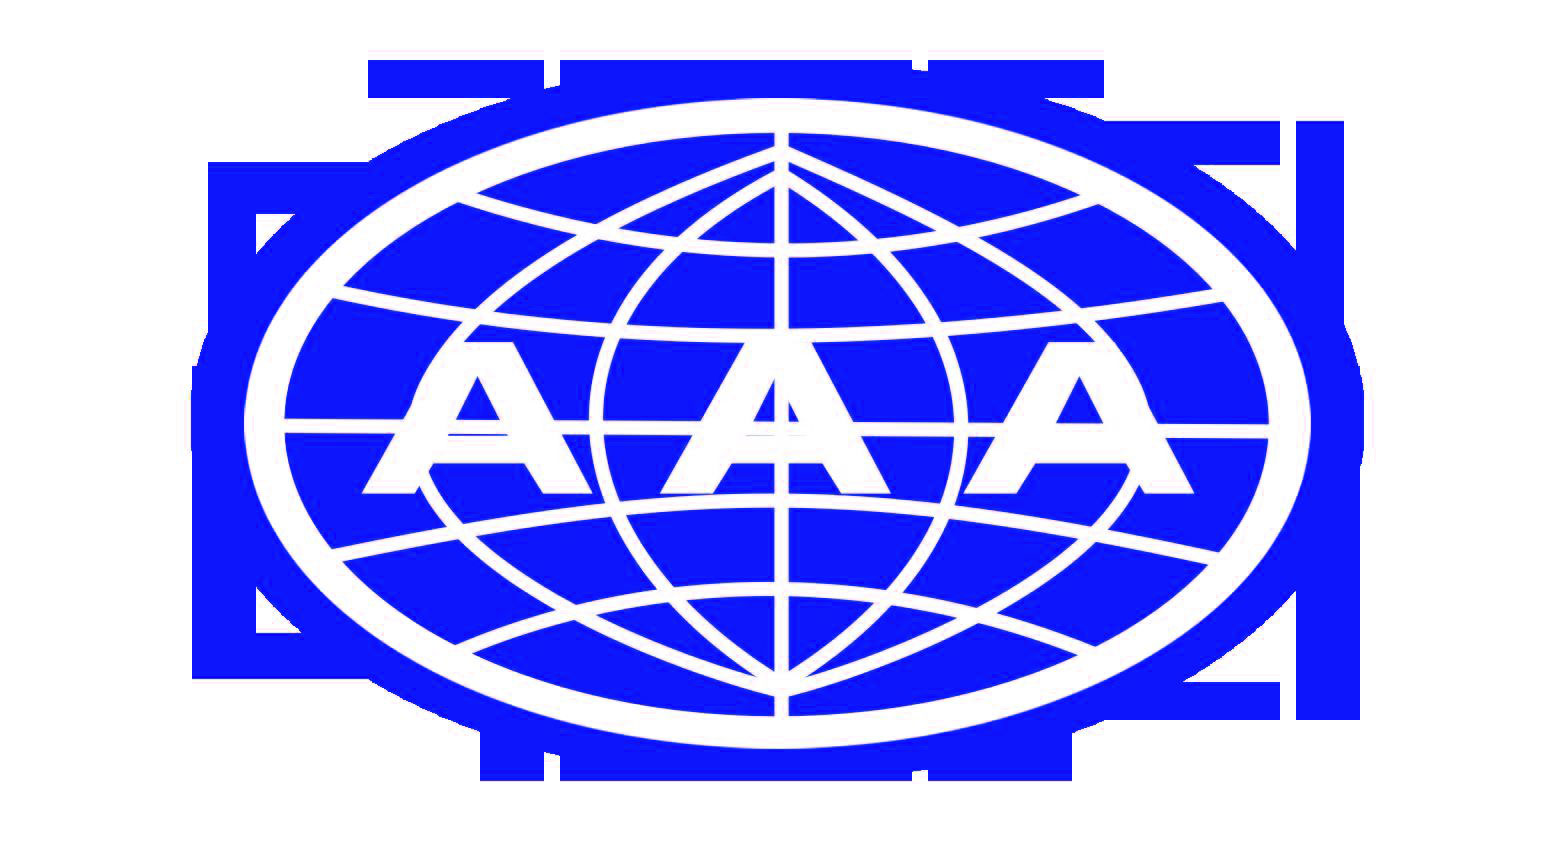 AAA信用证书及“重合同守信用”等企业荣誉证书，已成为企业形象提升、国企竞标、政府采购的必备条件。天津忘忧草官方安卓下载，可以帮您快捷省力的取得权威机构证书！